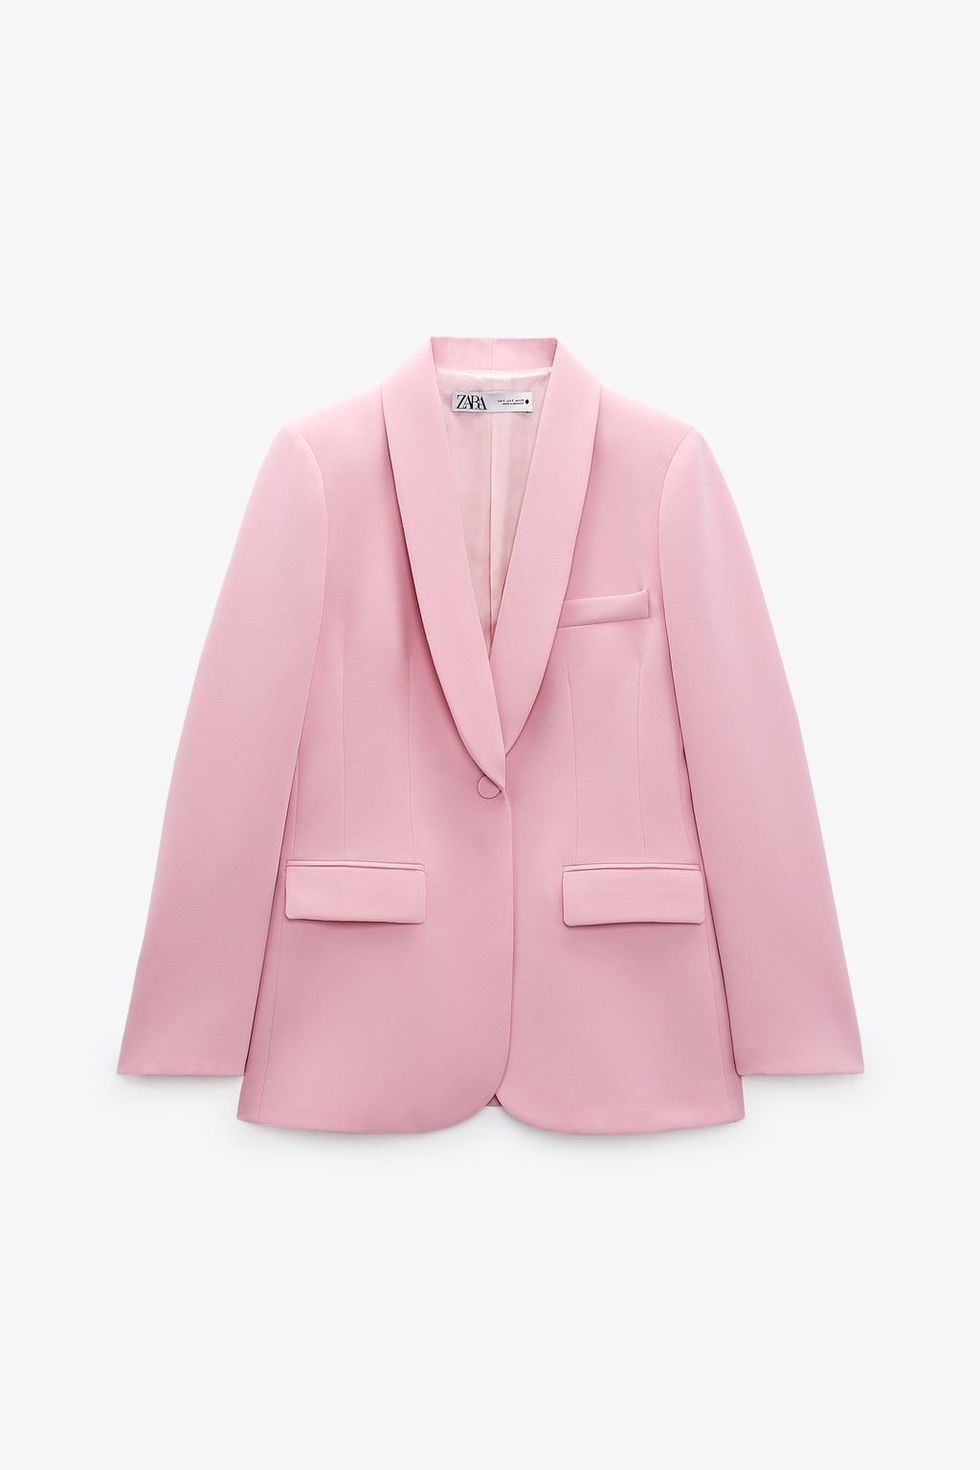 Victoria de Suecia estrena el traje rosa de Zara más bonito (y